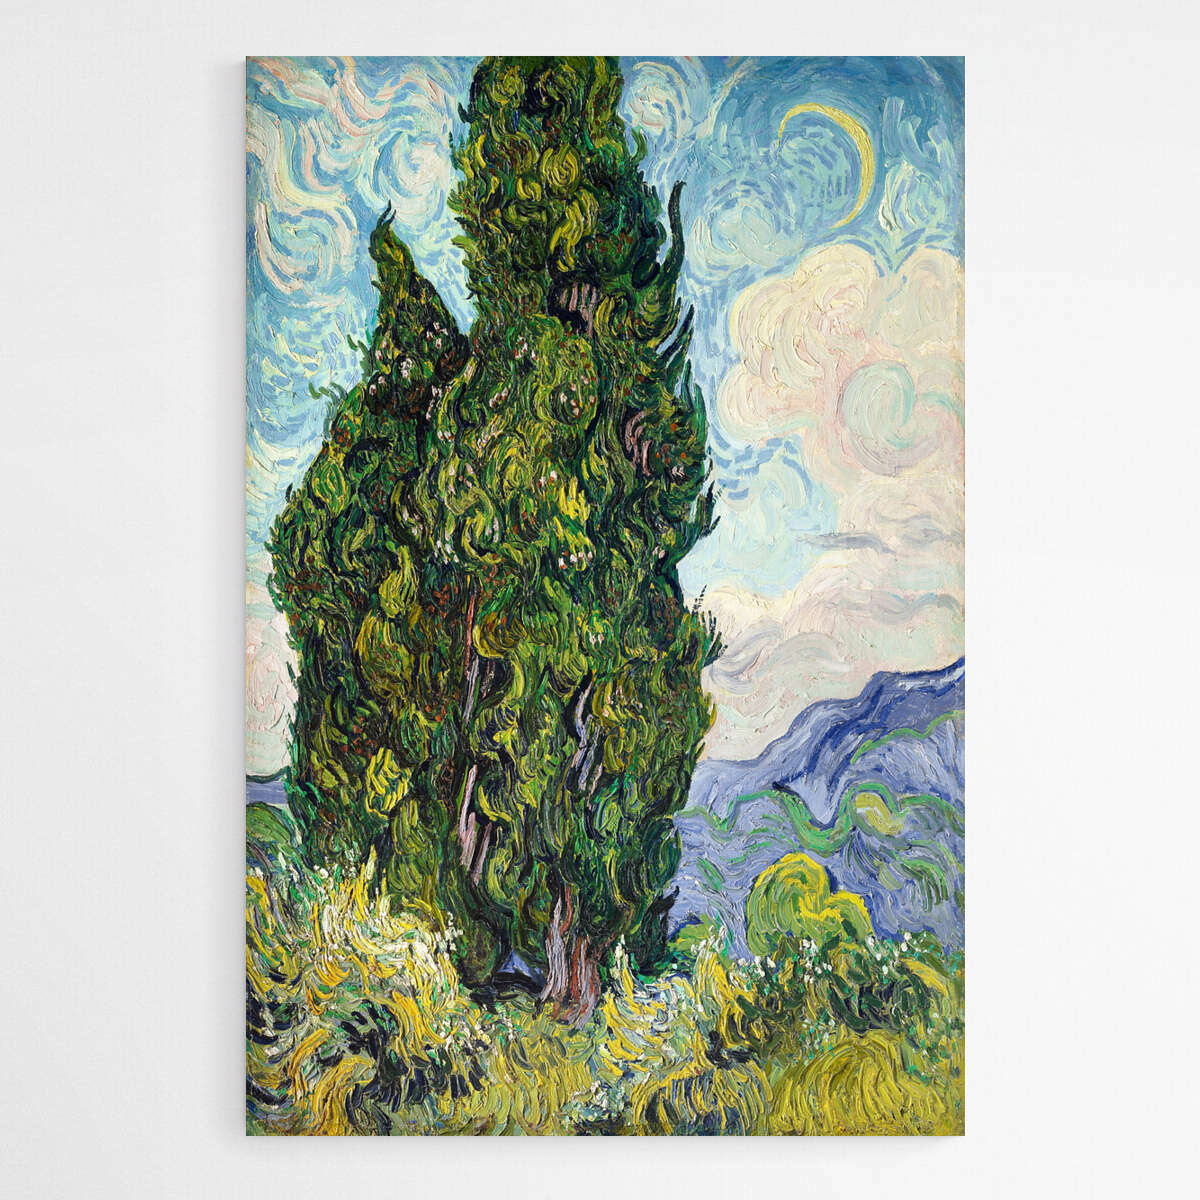 Cypresses by Vincent Van Gogh | Vincent Van Gogh Wall Art Prints - The Canvas Hive